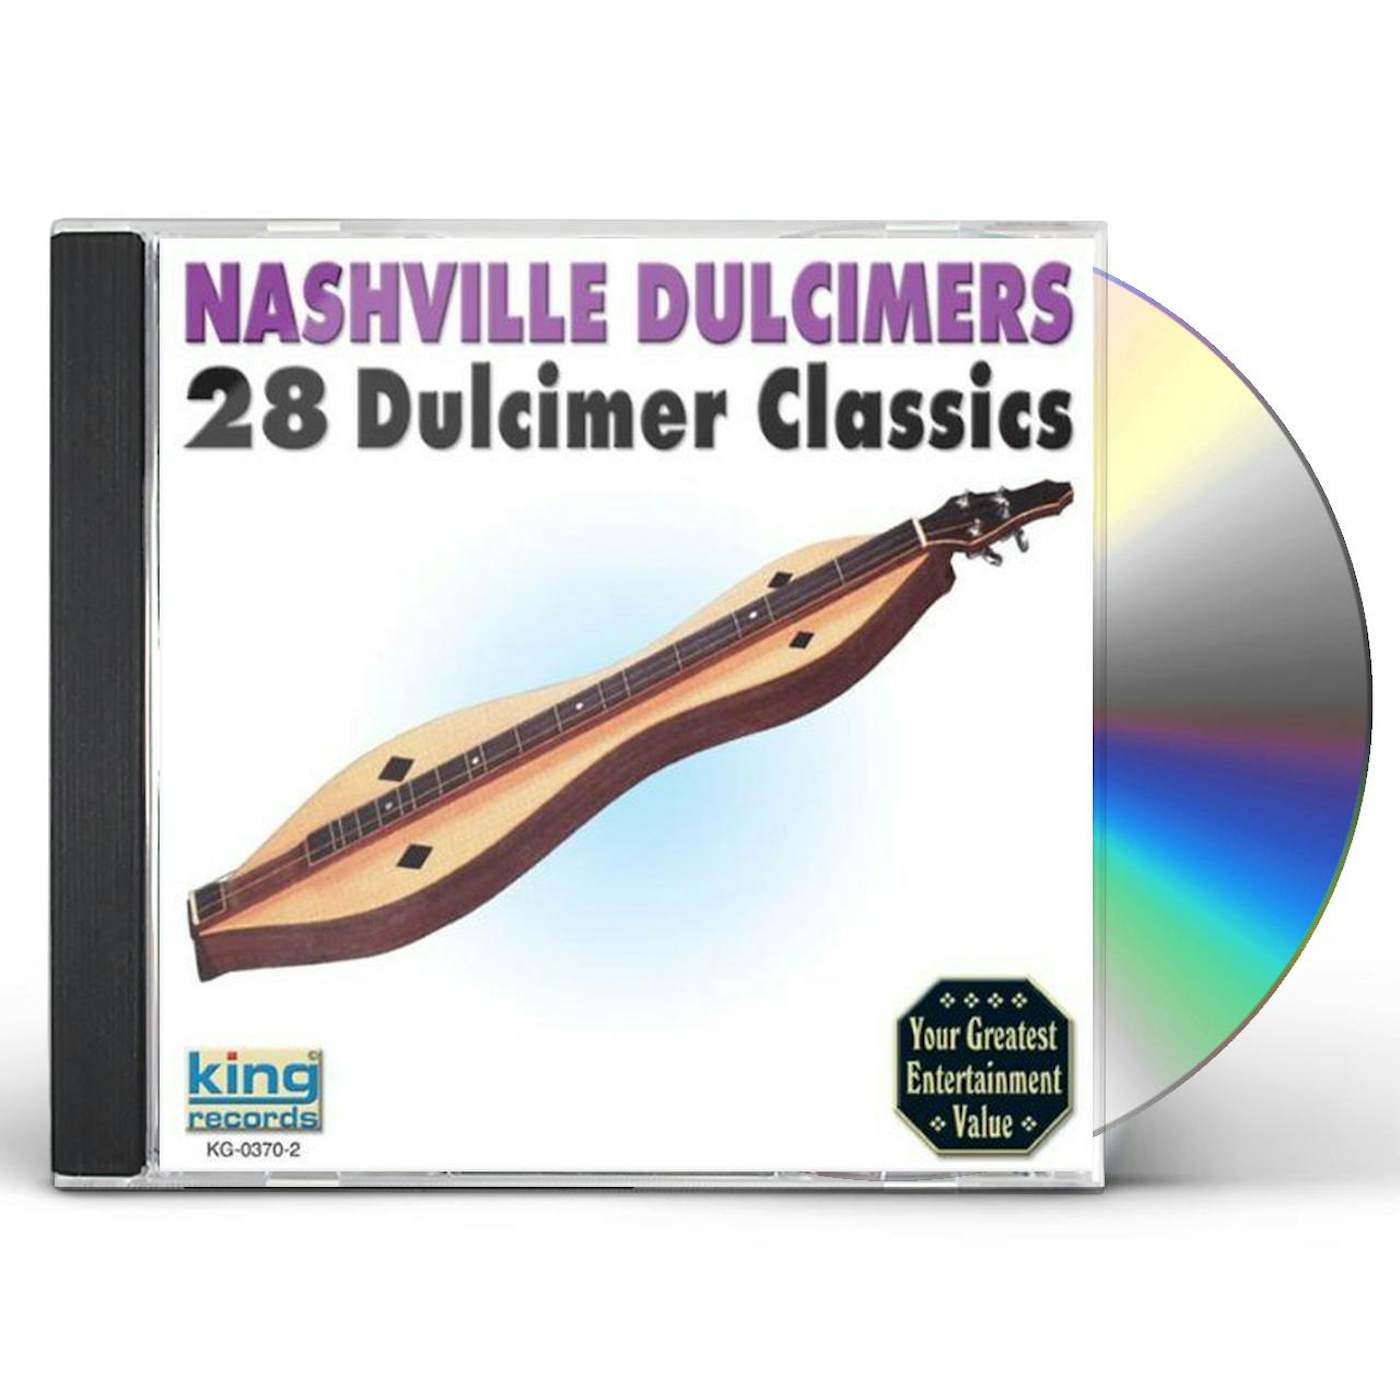 Nashville Dulcimers 28 DULCIMER CLASSICS CD